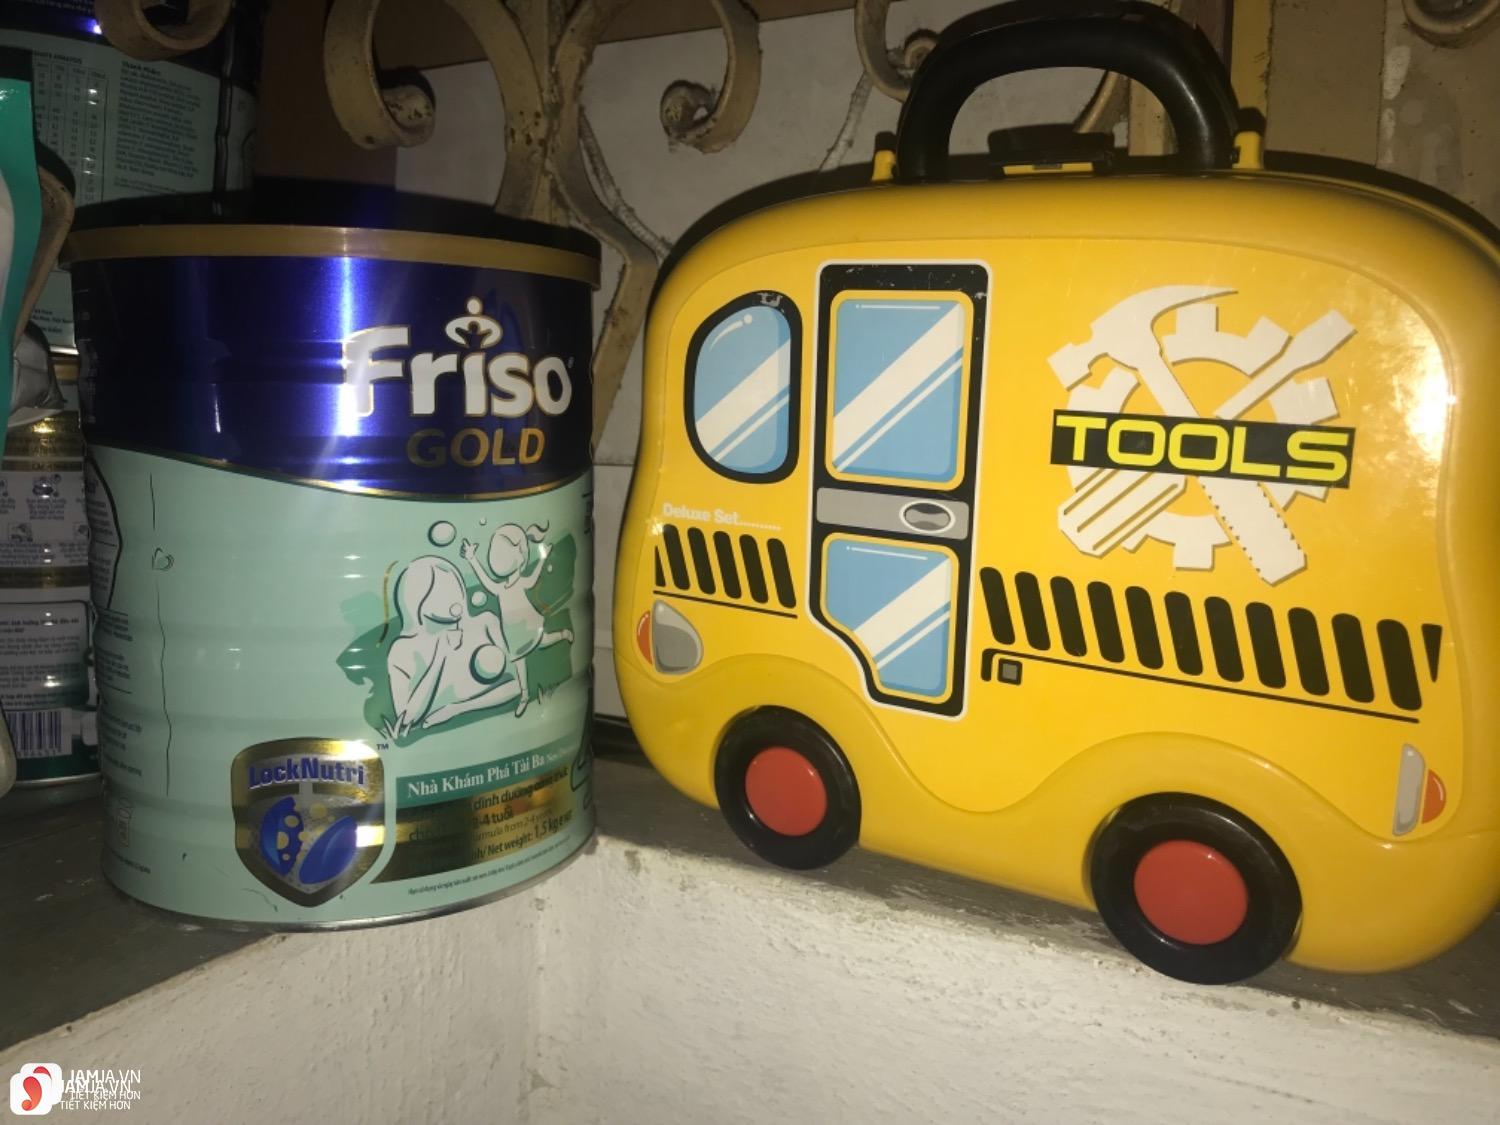 Đôi nét về thương hiệu Friso 3